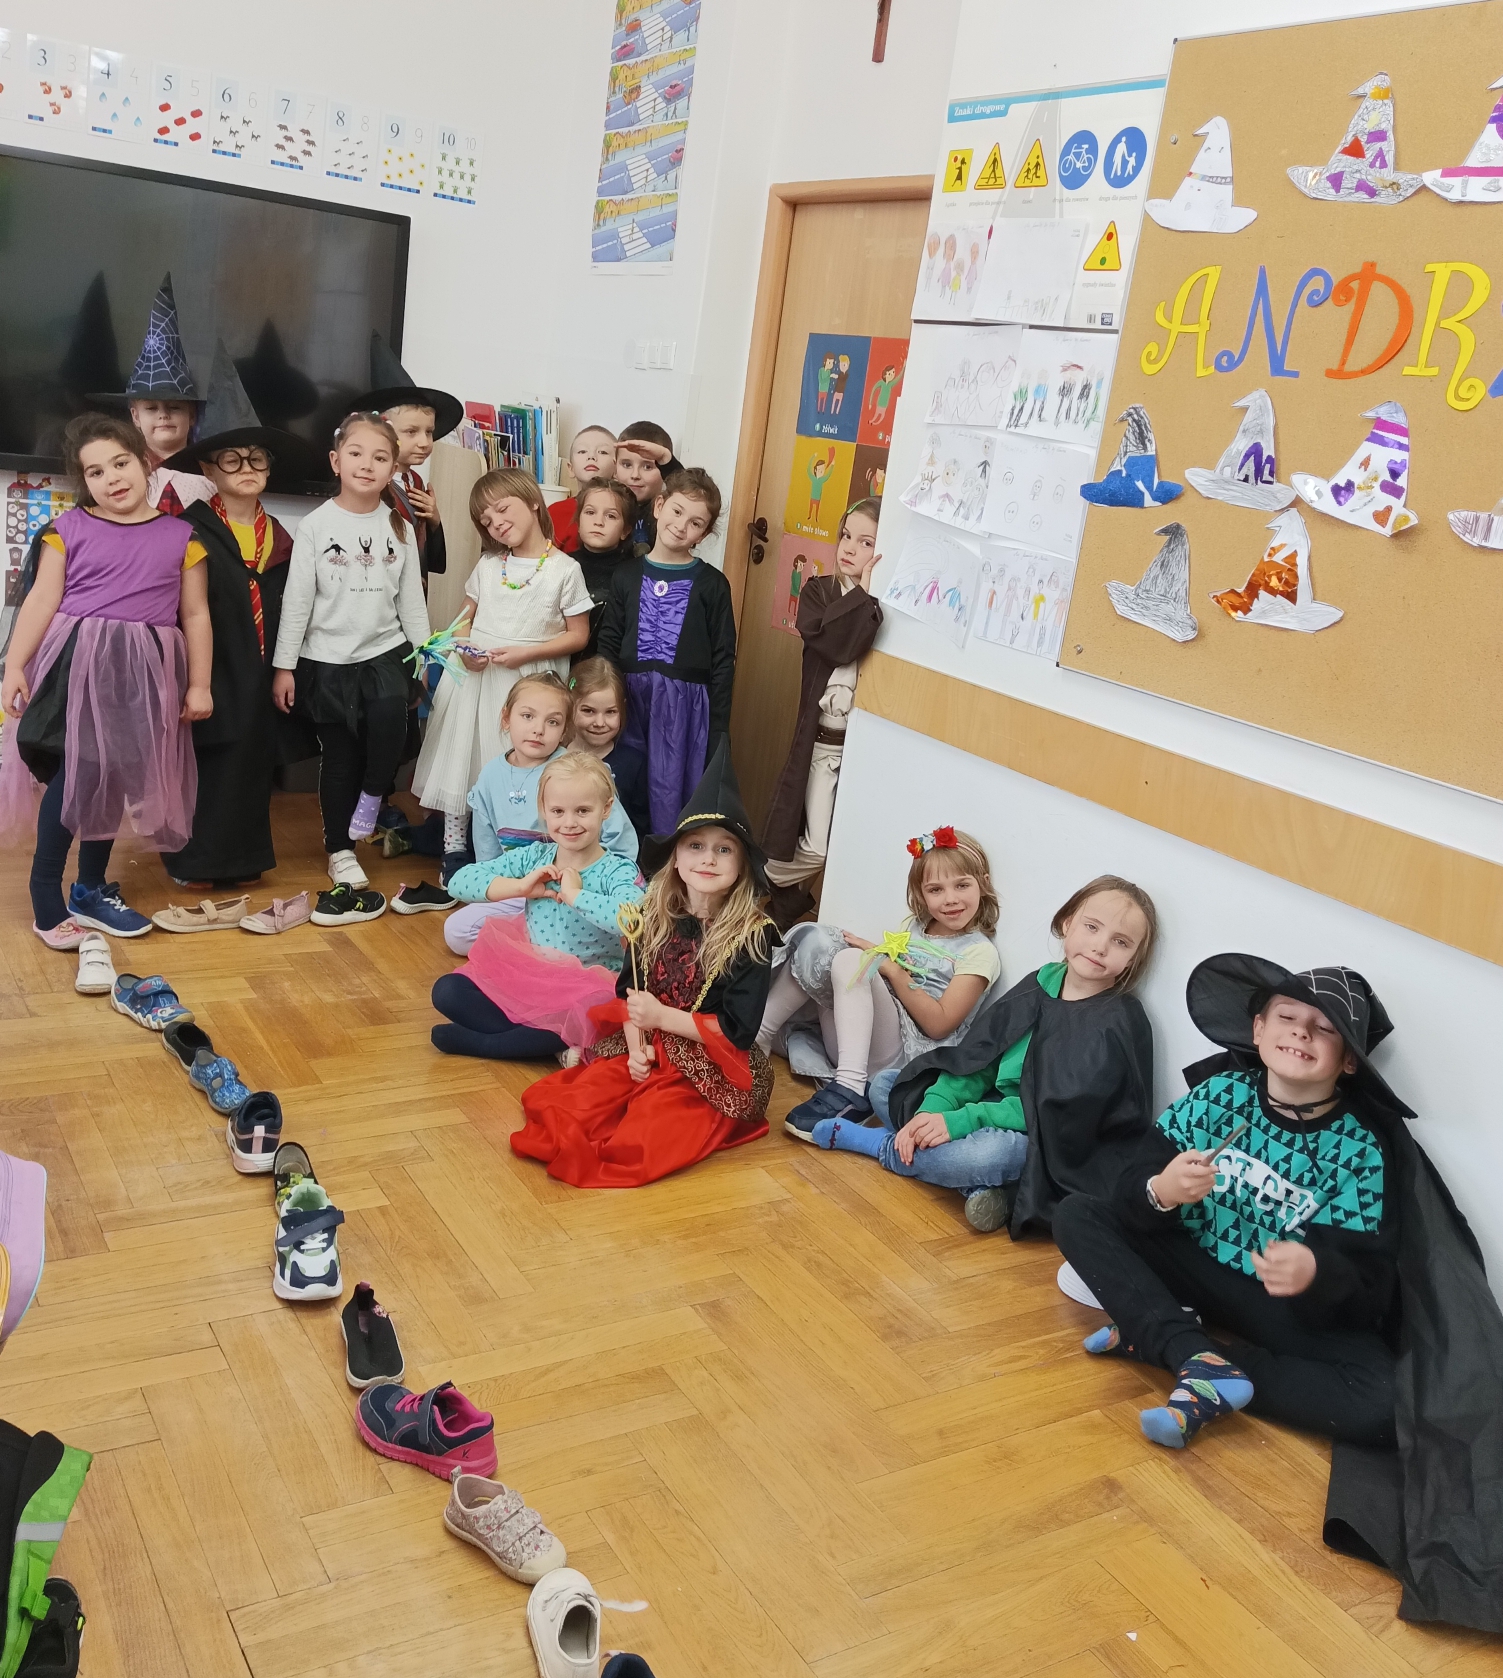  Dzieci stoją/siedzą uśmiechem na twarzy, ubrani w stroje wróżek, magików, czarodziei. Na podłodze ułożone buty w rzędzie.